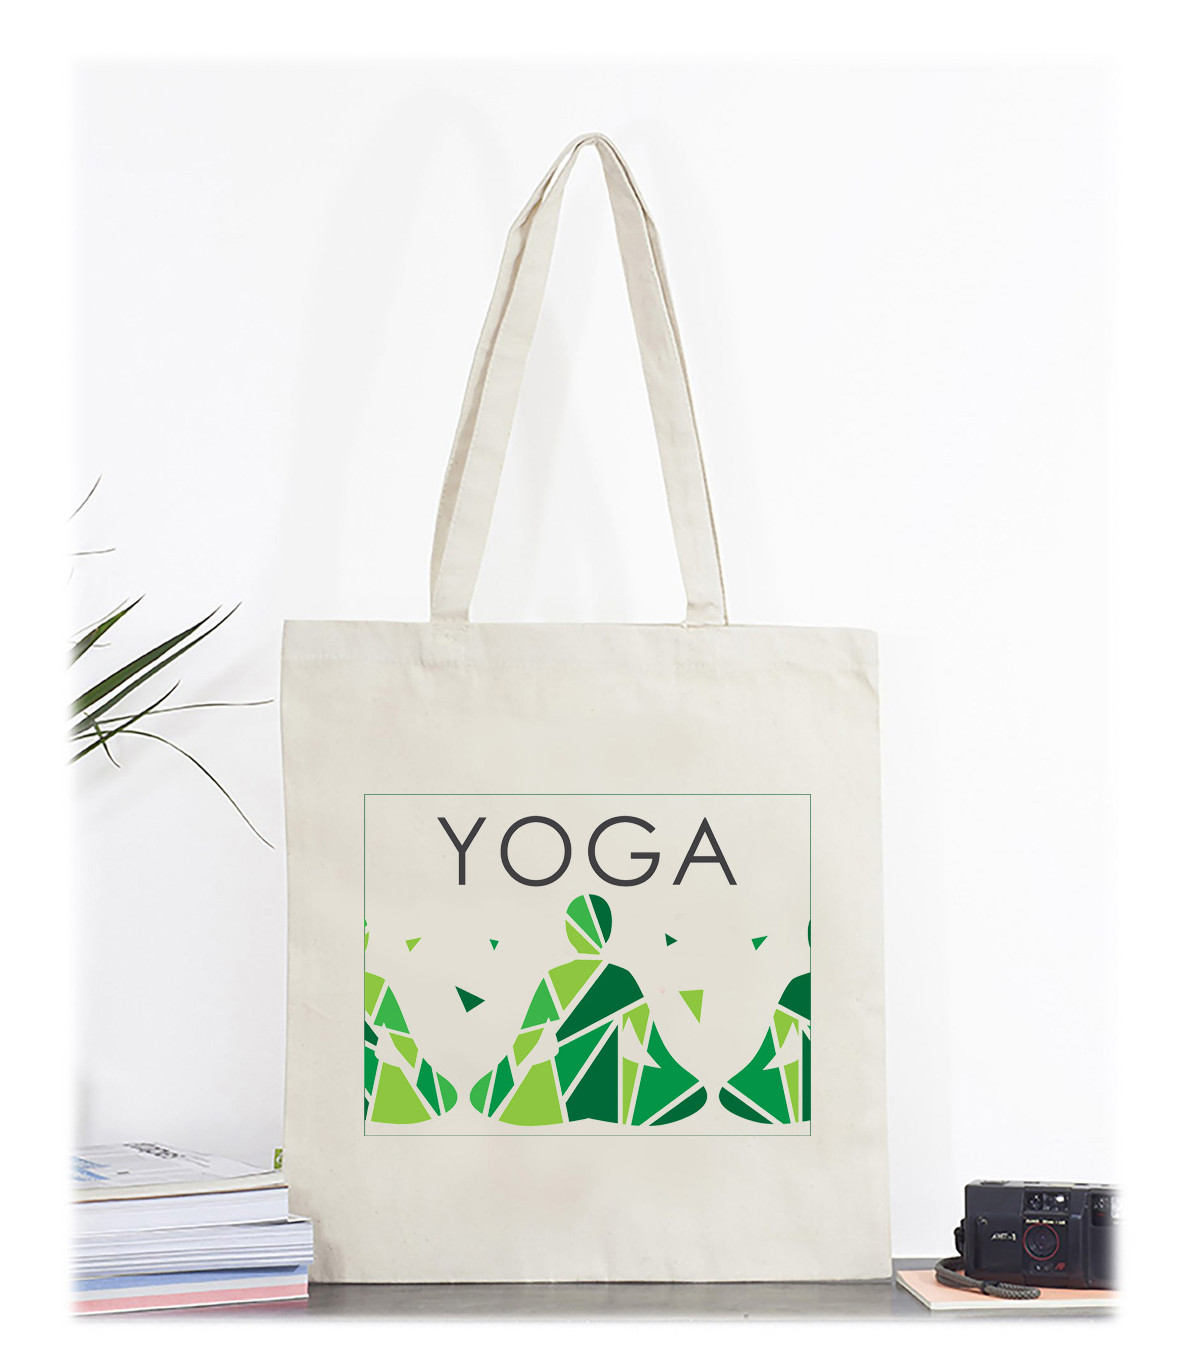 Pour votre séance yoga, optez pour ce sac à personnaliser